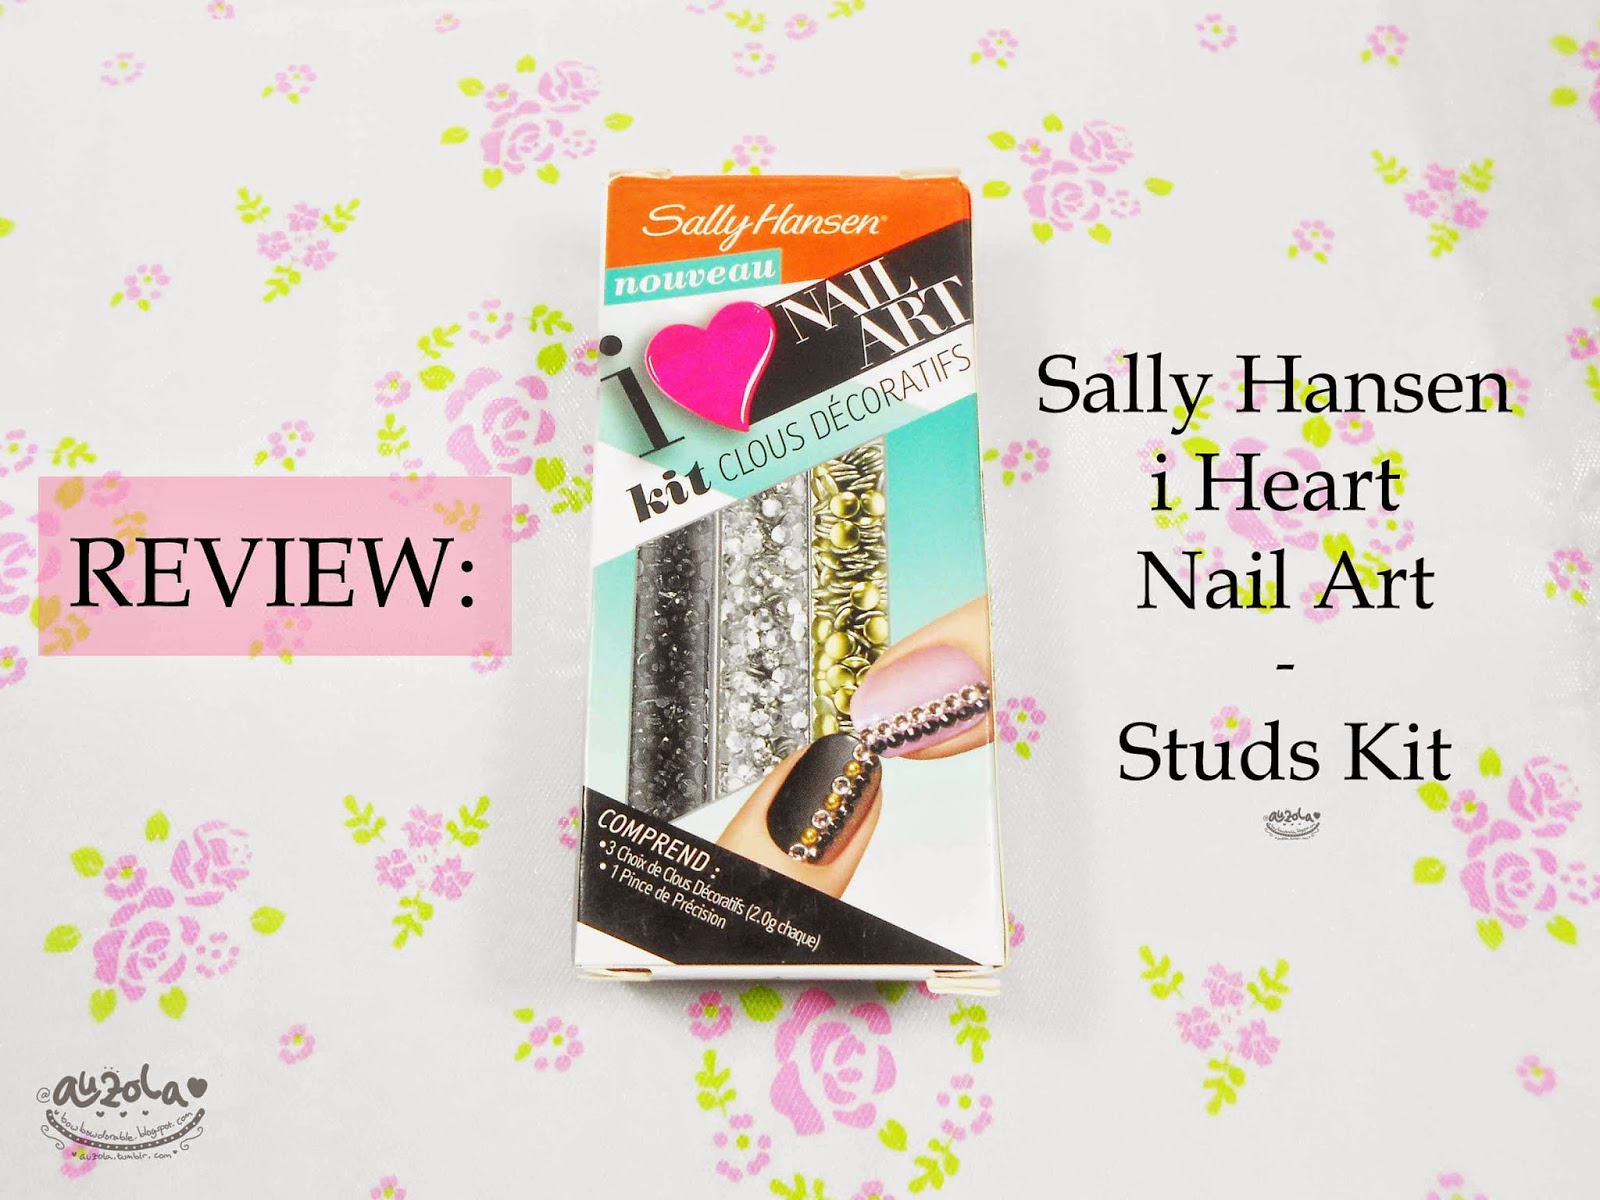 2. Sally Hansen Nail Art Tool Kit - wide 7